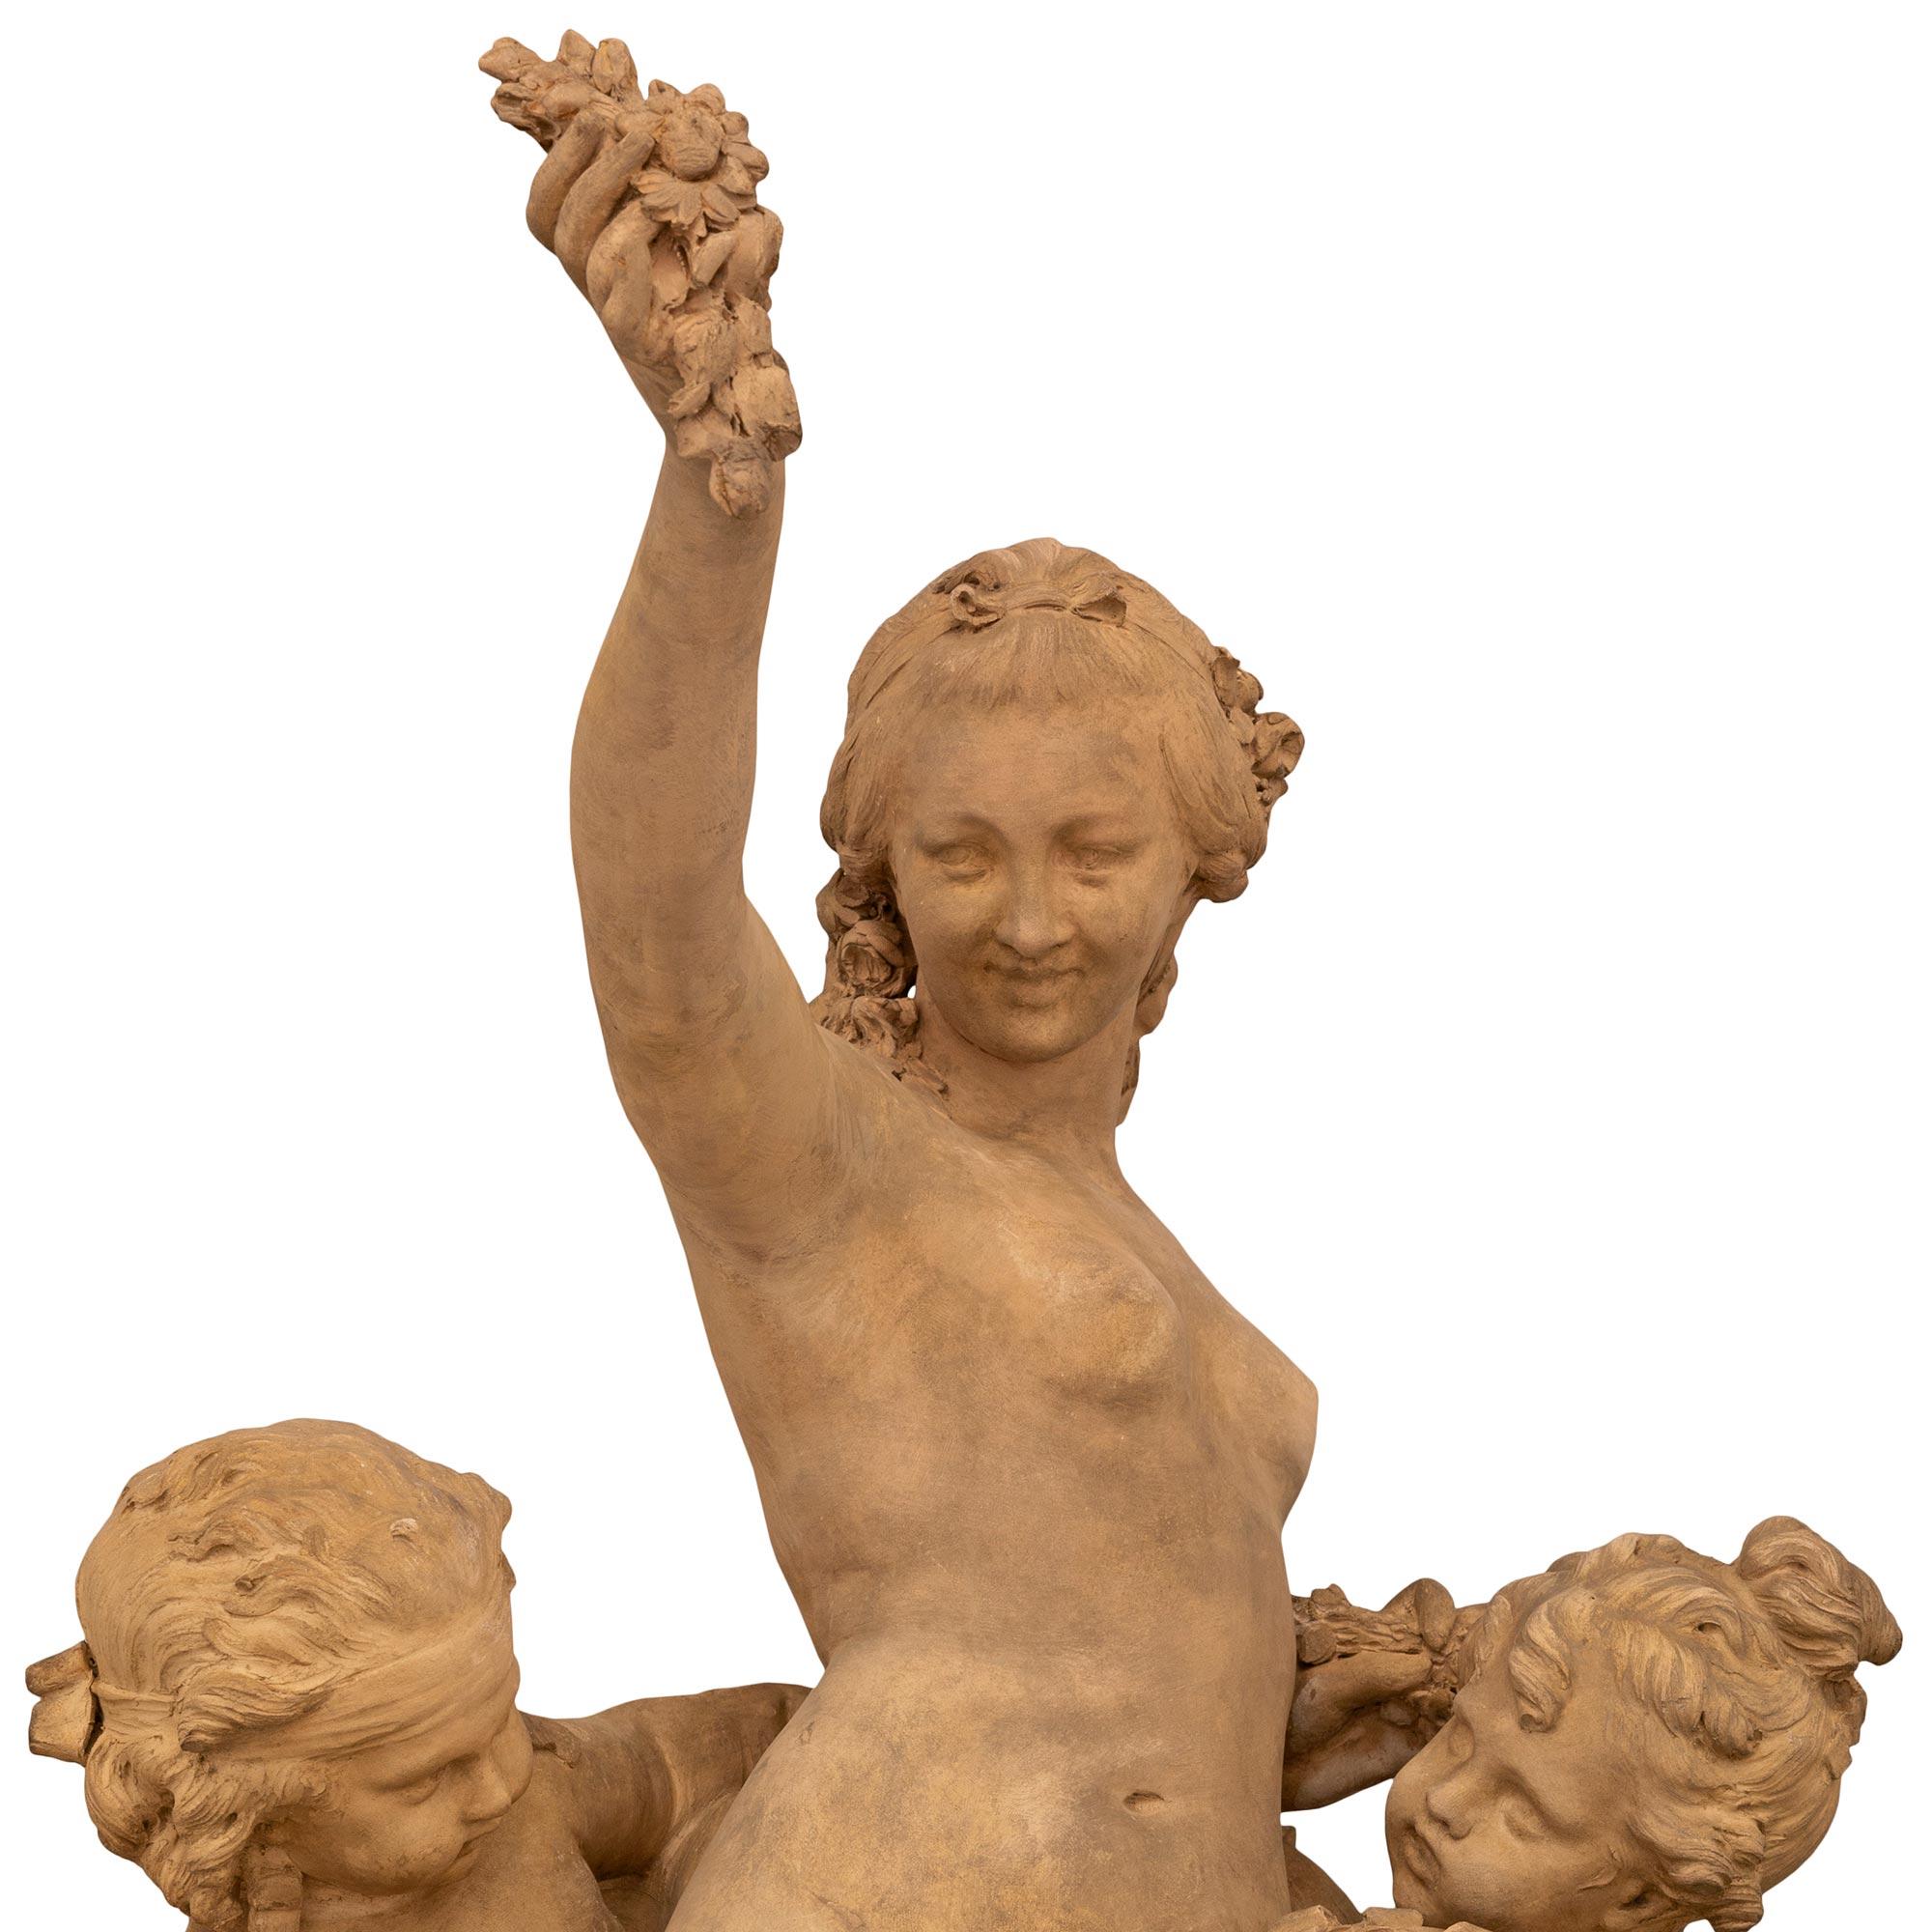 Exceptionnelle statue italienne du XIXe siècle de style Louis XVI en terre cuite, bronze doré et marbre Sarrancolin, attribuée à Clodion. La statue repose sur son élégant socle circulaire d'origine en marbre de Sarrancolin, orné de délicats motifs